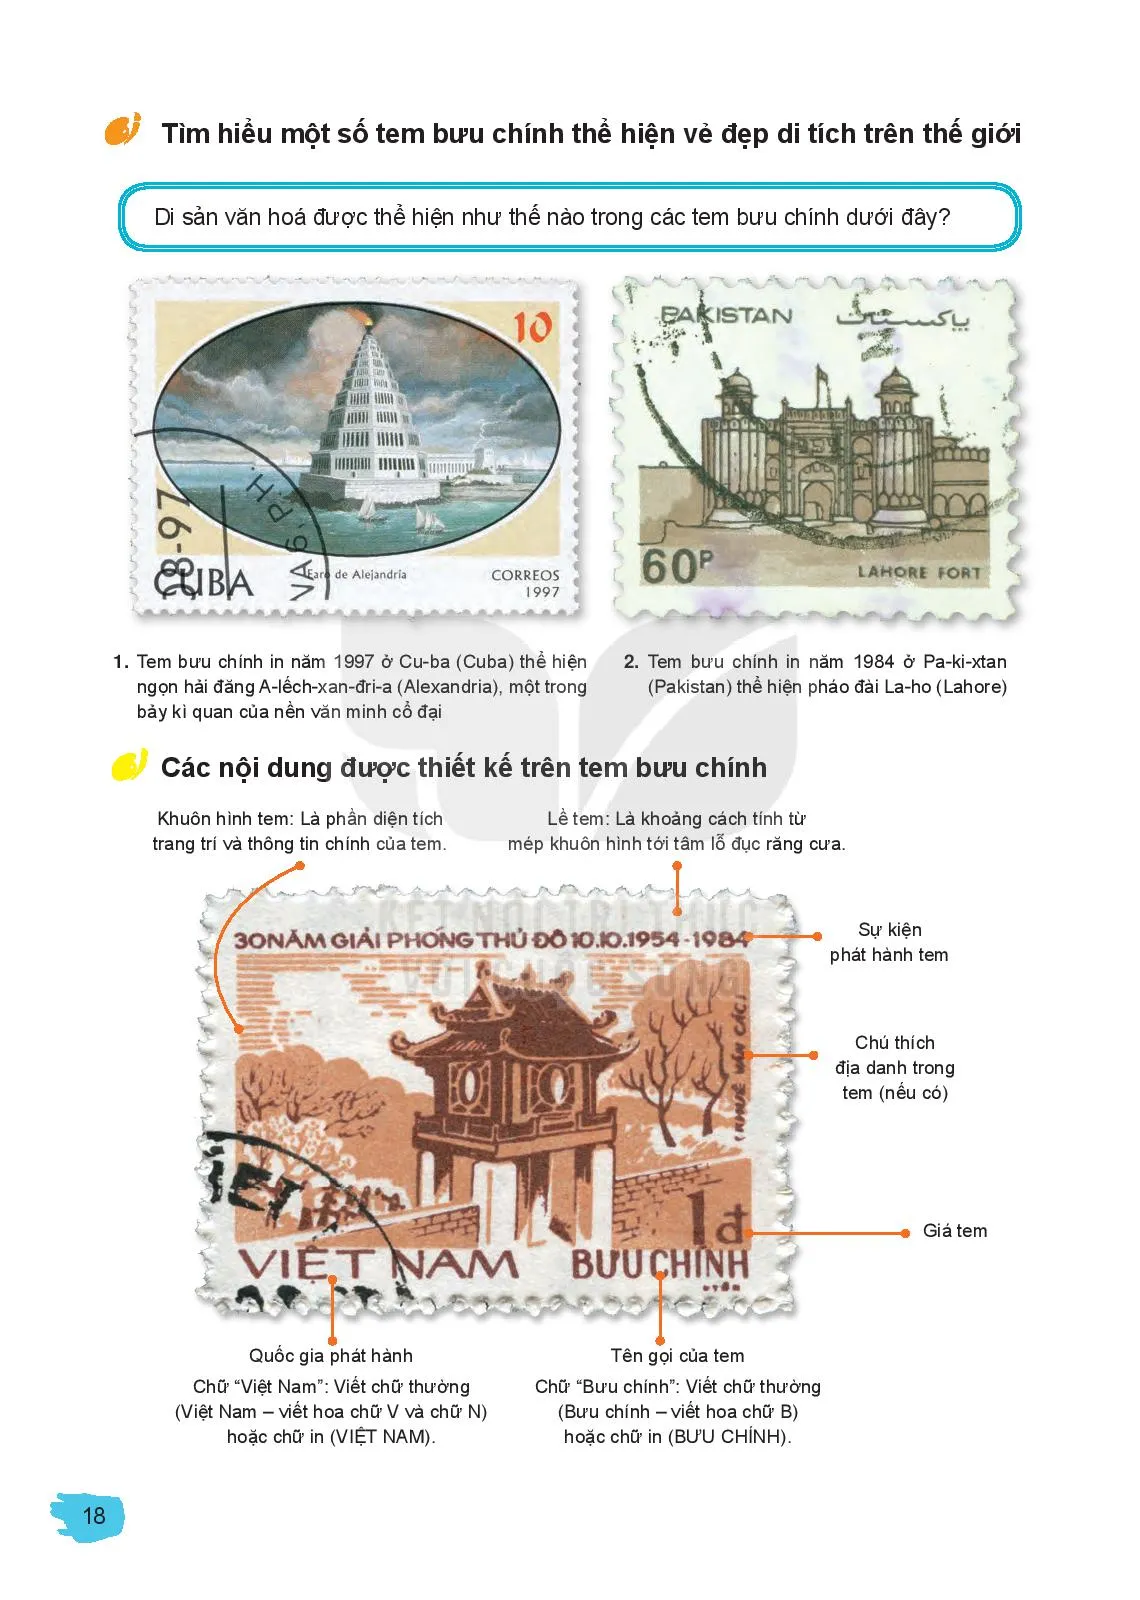 Bài 4: Hình ảnh di tích trong thiết kế tem bưu chính